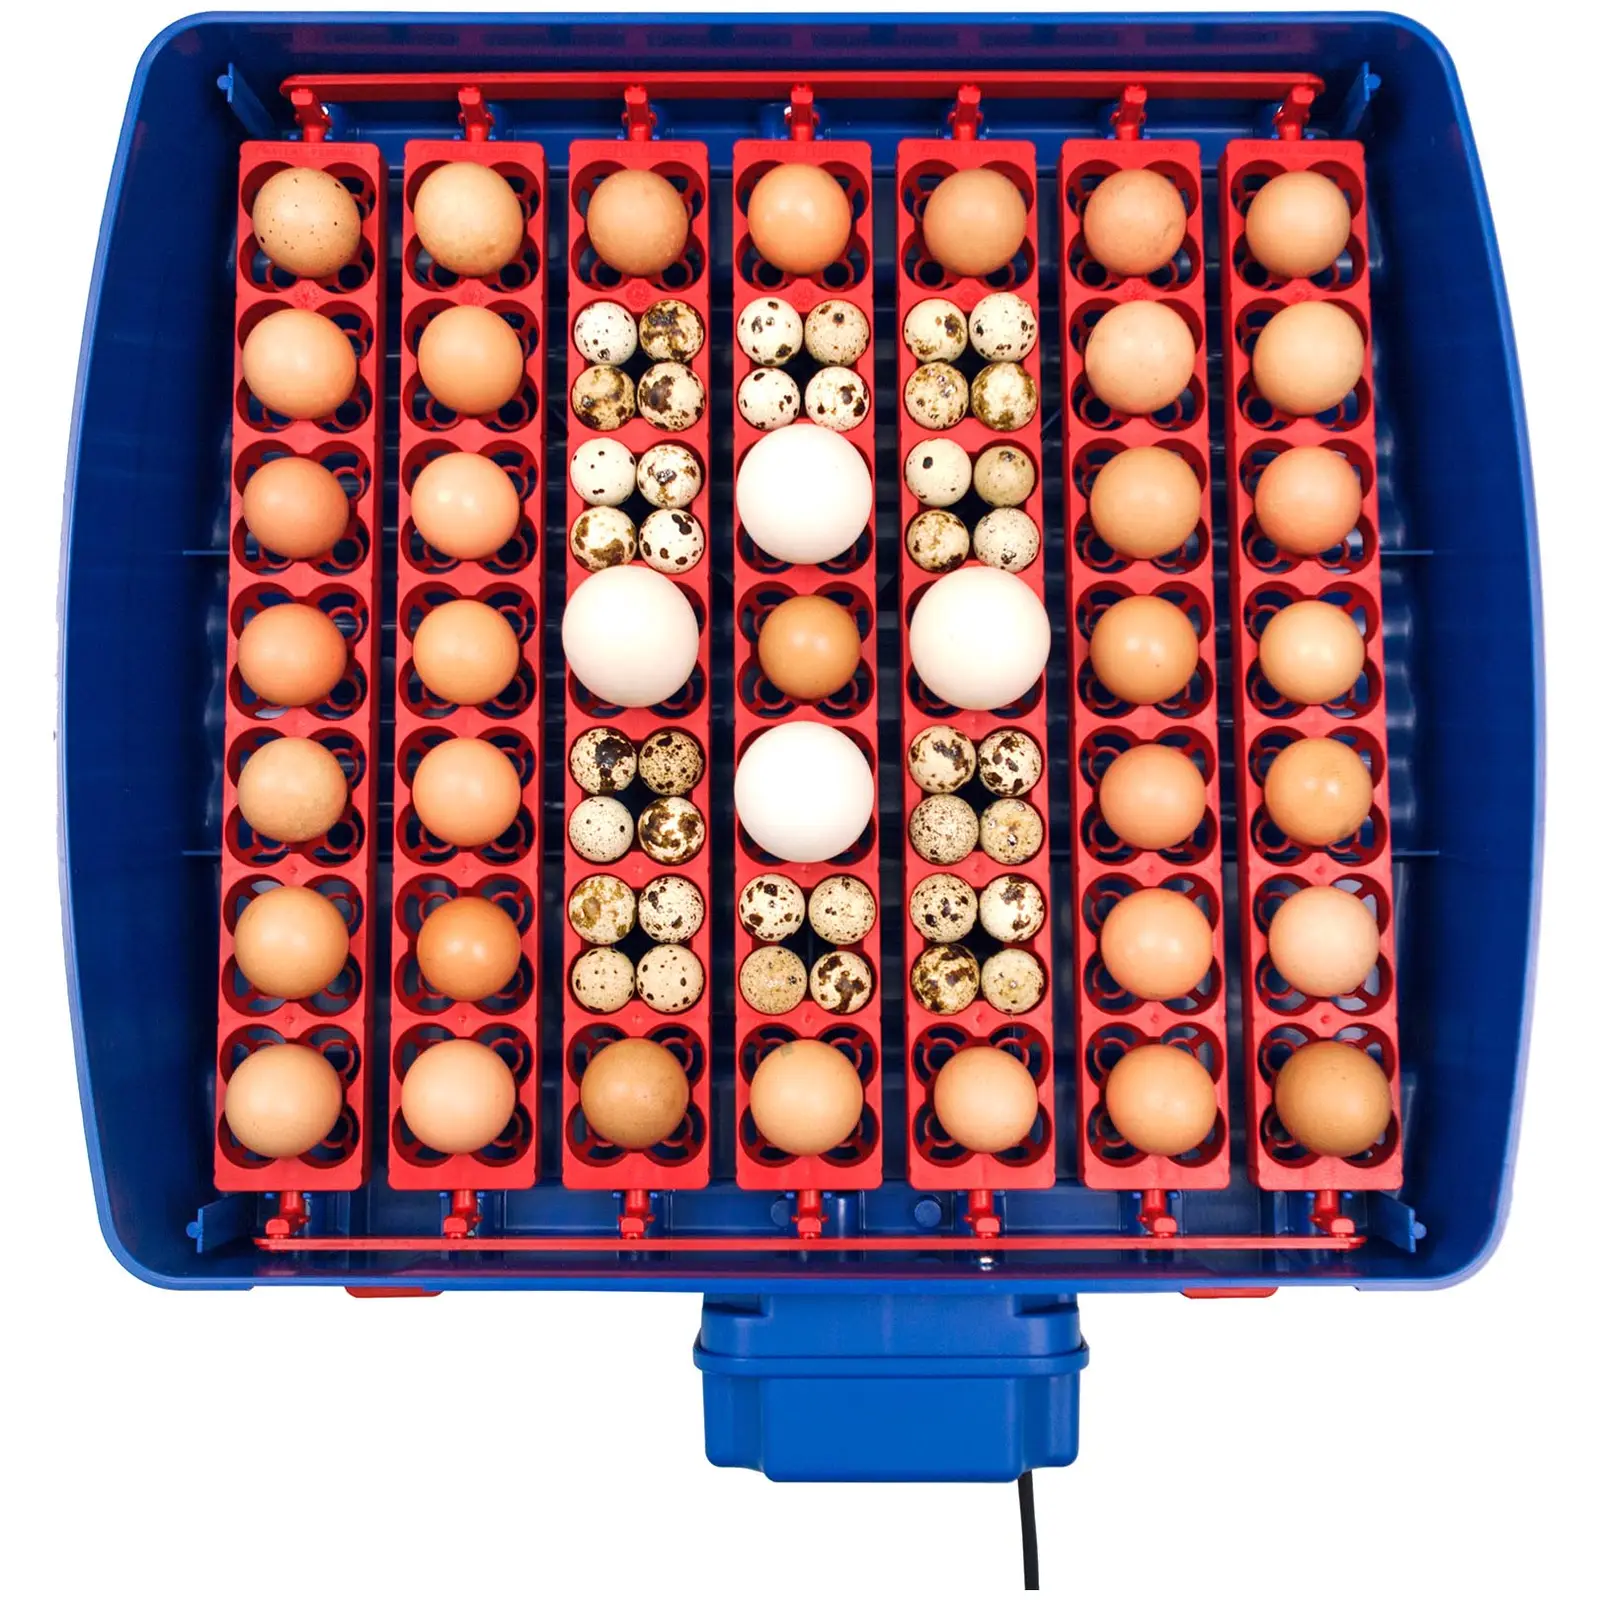 Umelá liaheň - 49 vajec - vrátane zvlhčovacieho systému - antimikrobiálna ochrana Biomaster